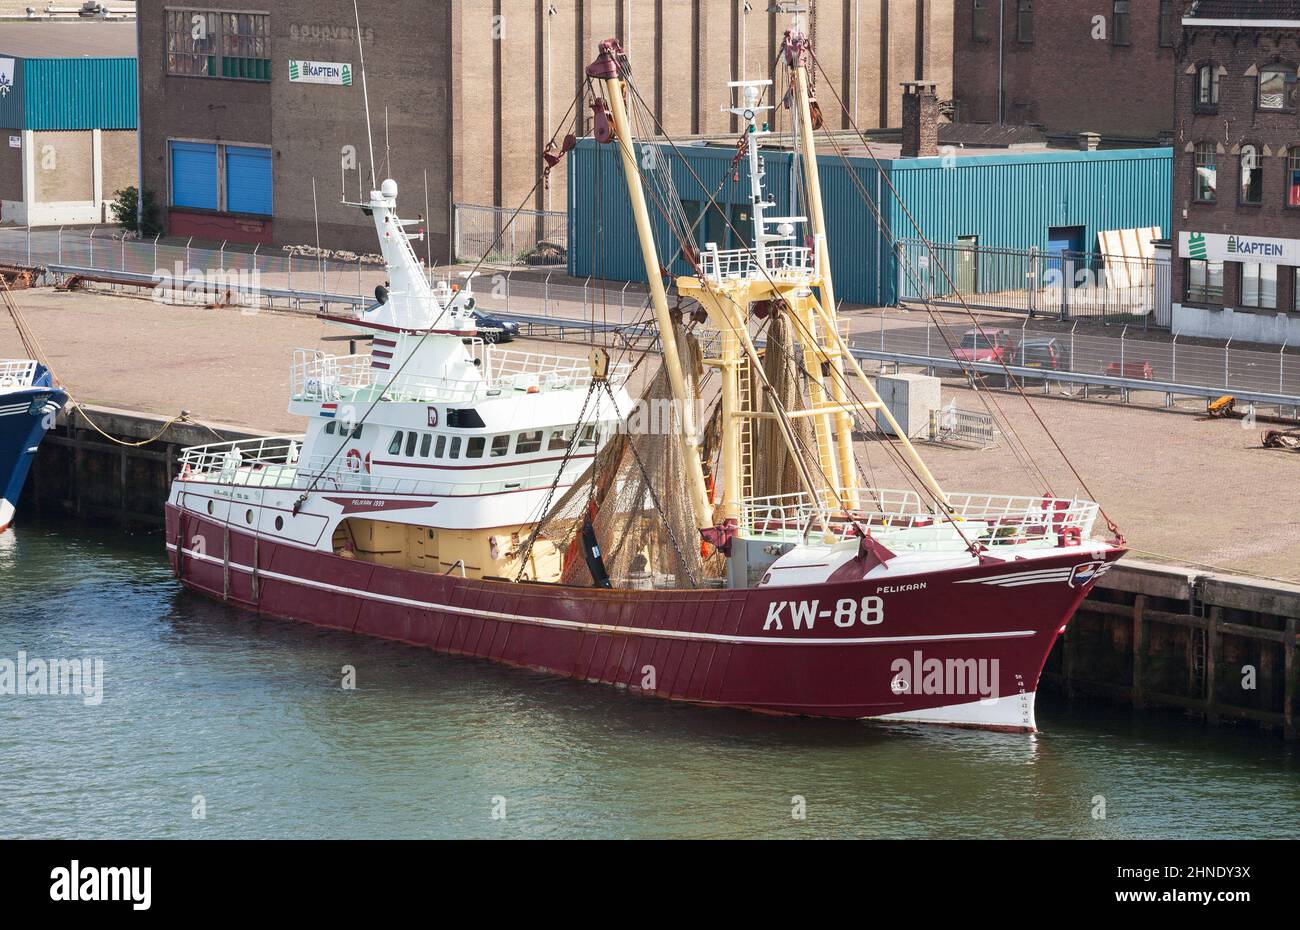 Fishing vessel KW-88 Pelikaan moored in Ijmuiden harbour, the Netherlands, Europe. Stock Photo